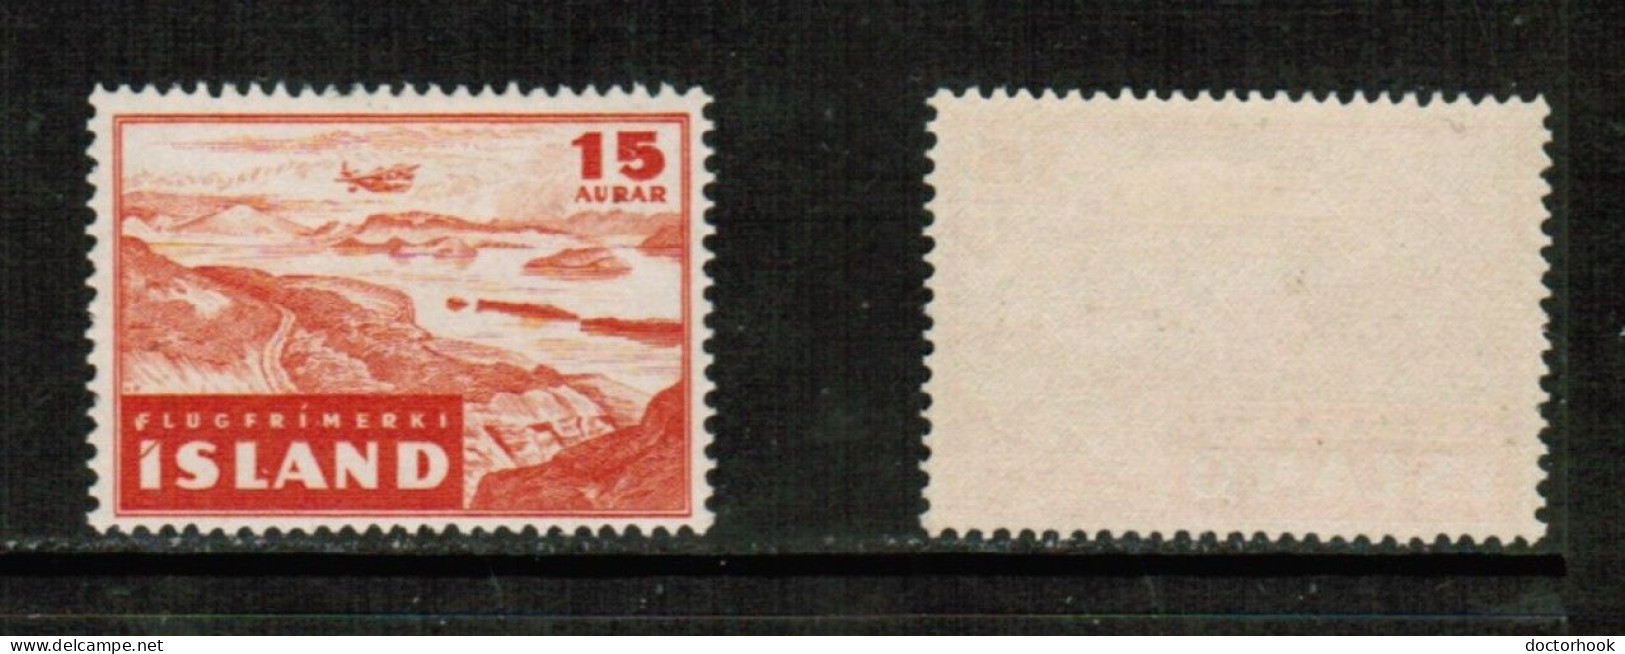 ICELAND   Scott # C 21* MINT LH (CONDITION AS PER SCAN) (Stamp Scan # 950-18) - Luftpost